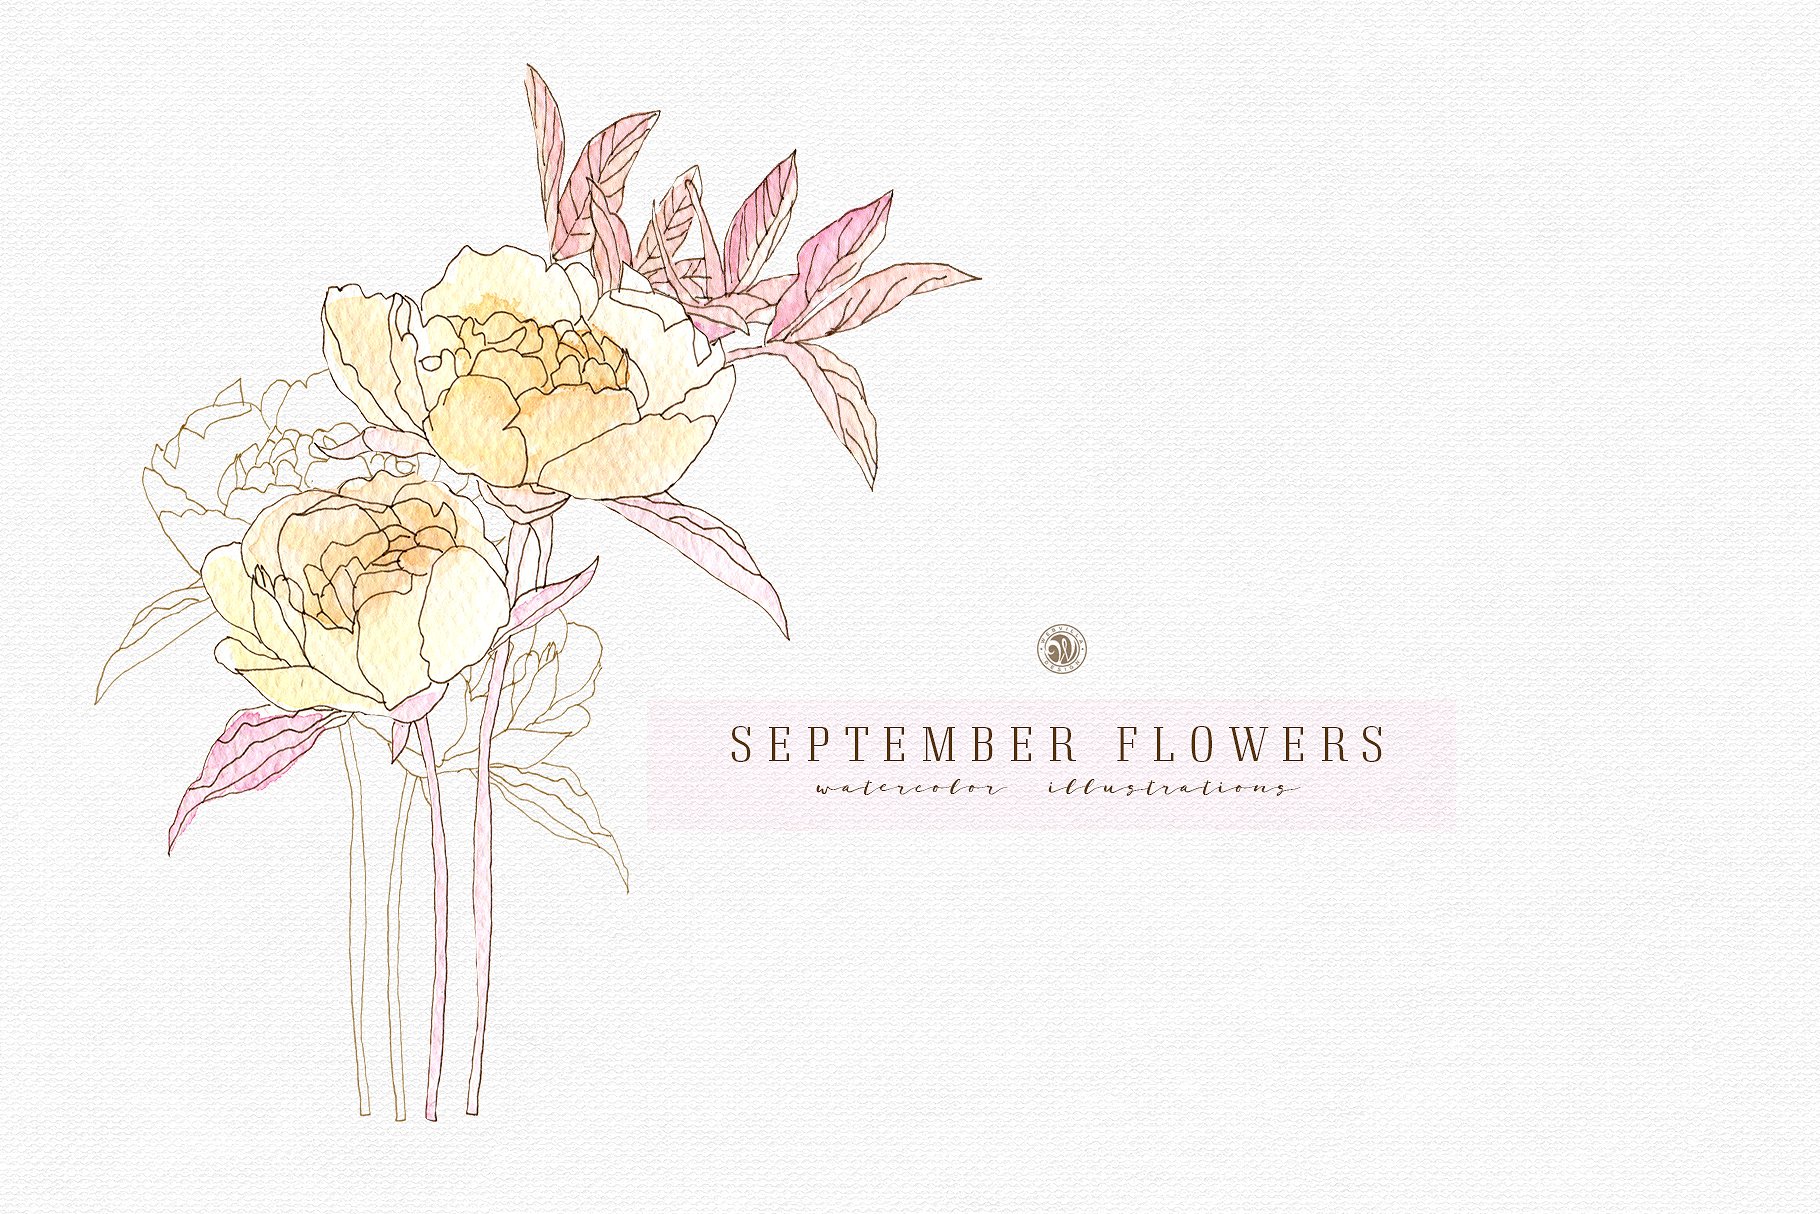 九月淡雅风水彩手绘花卉插画素材v2 September Flowers vol.2插图1